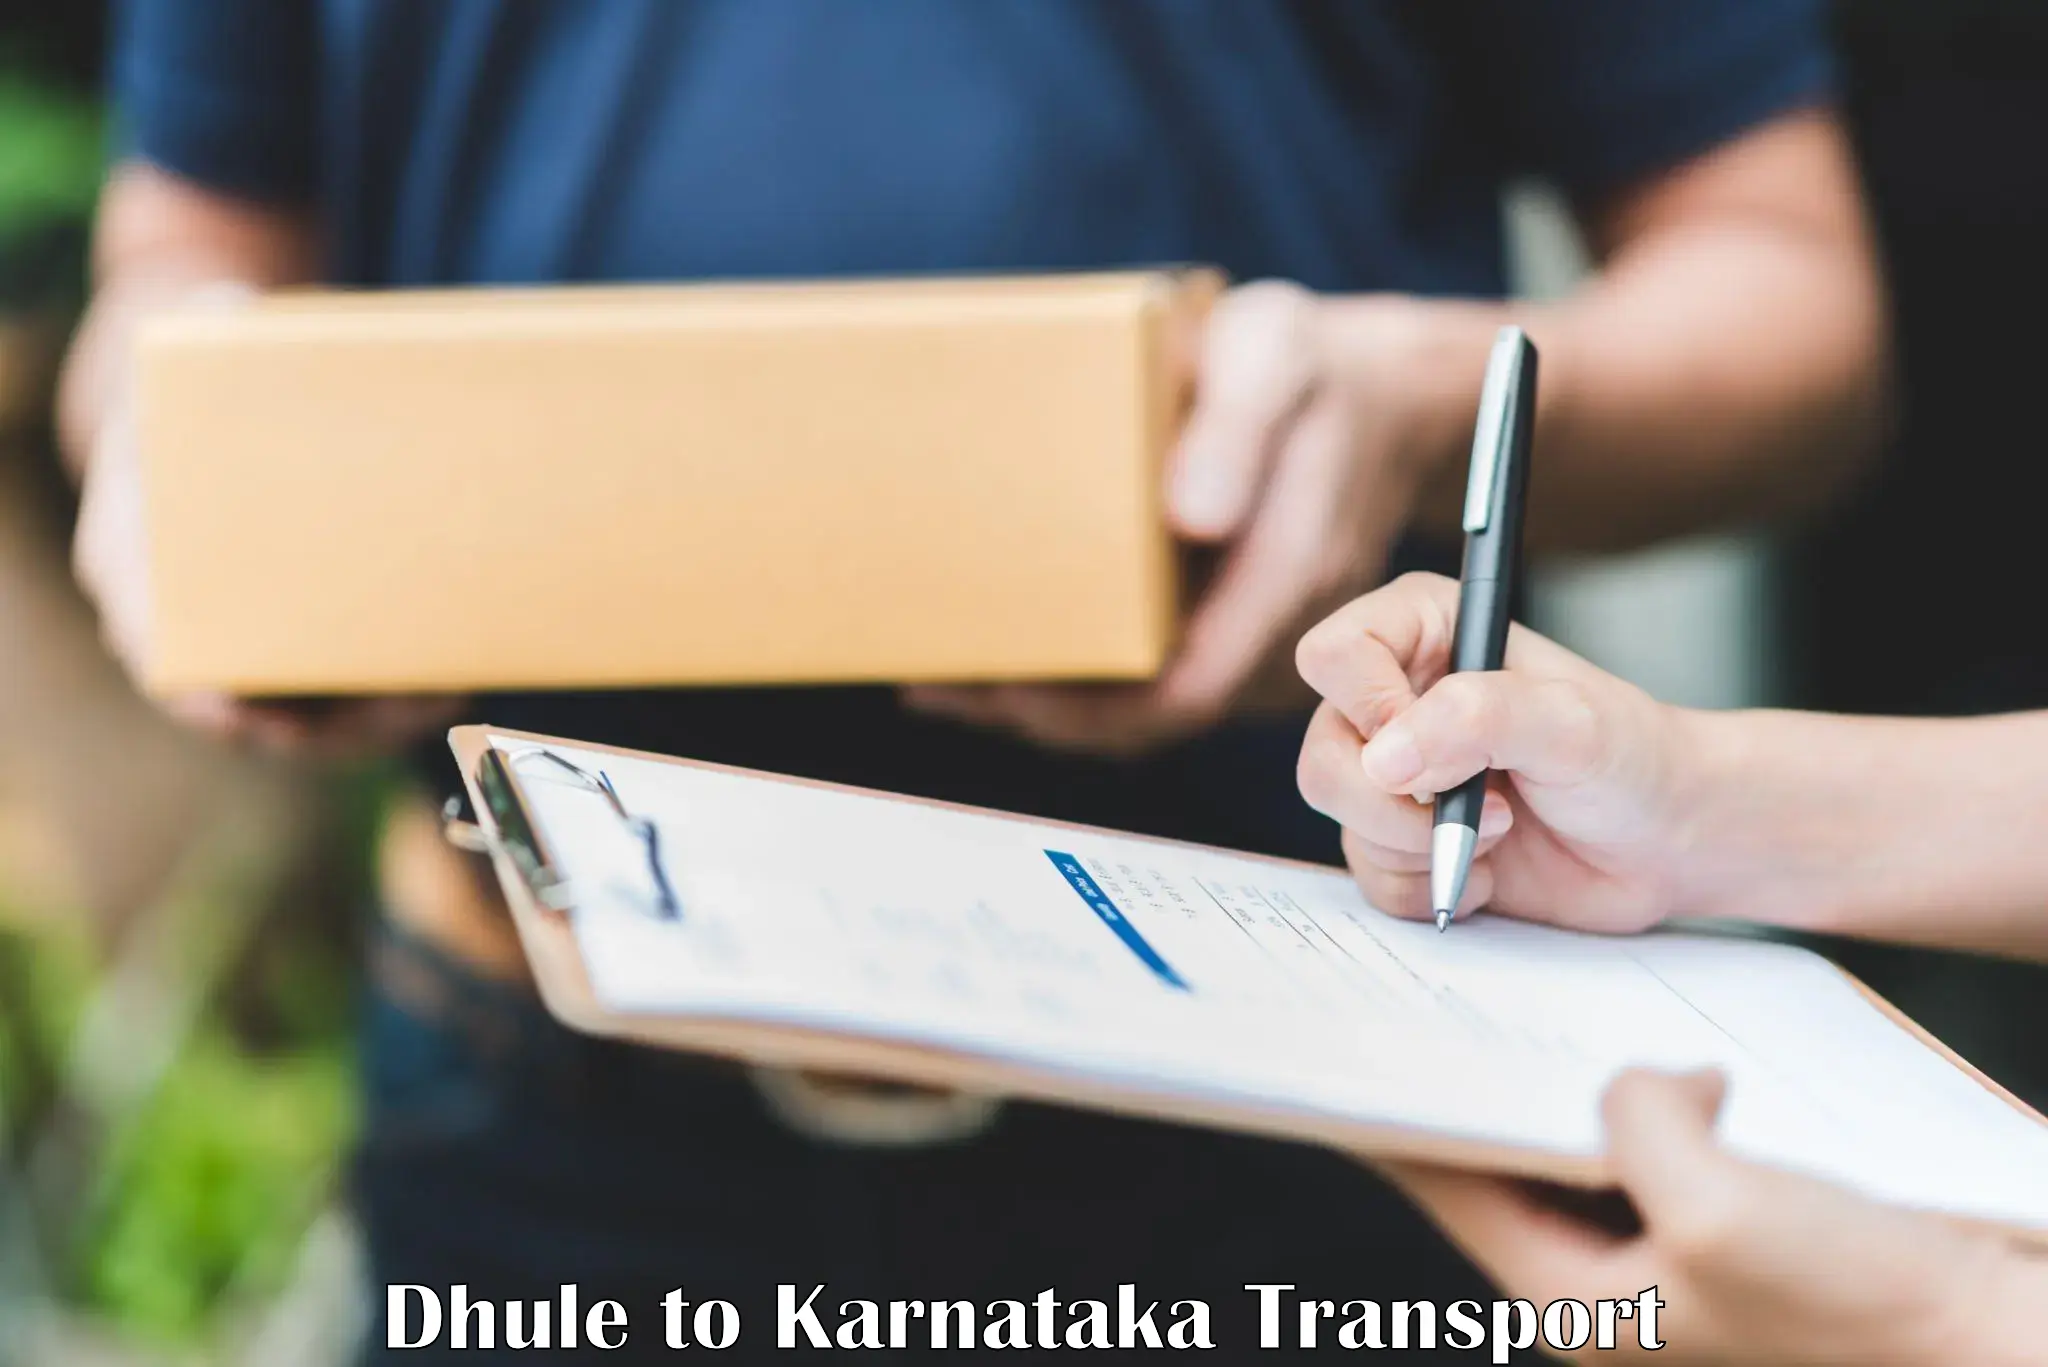 Furniture transport service in Dhule to Toranagallu